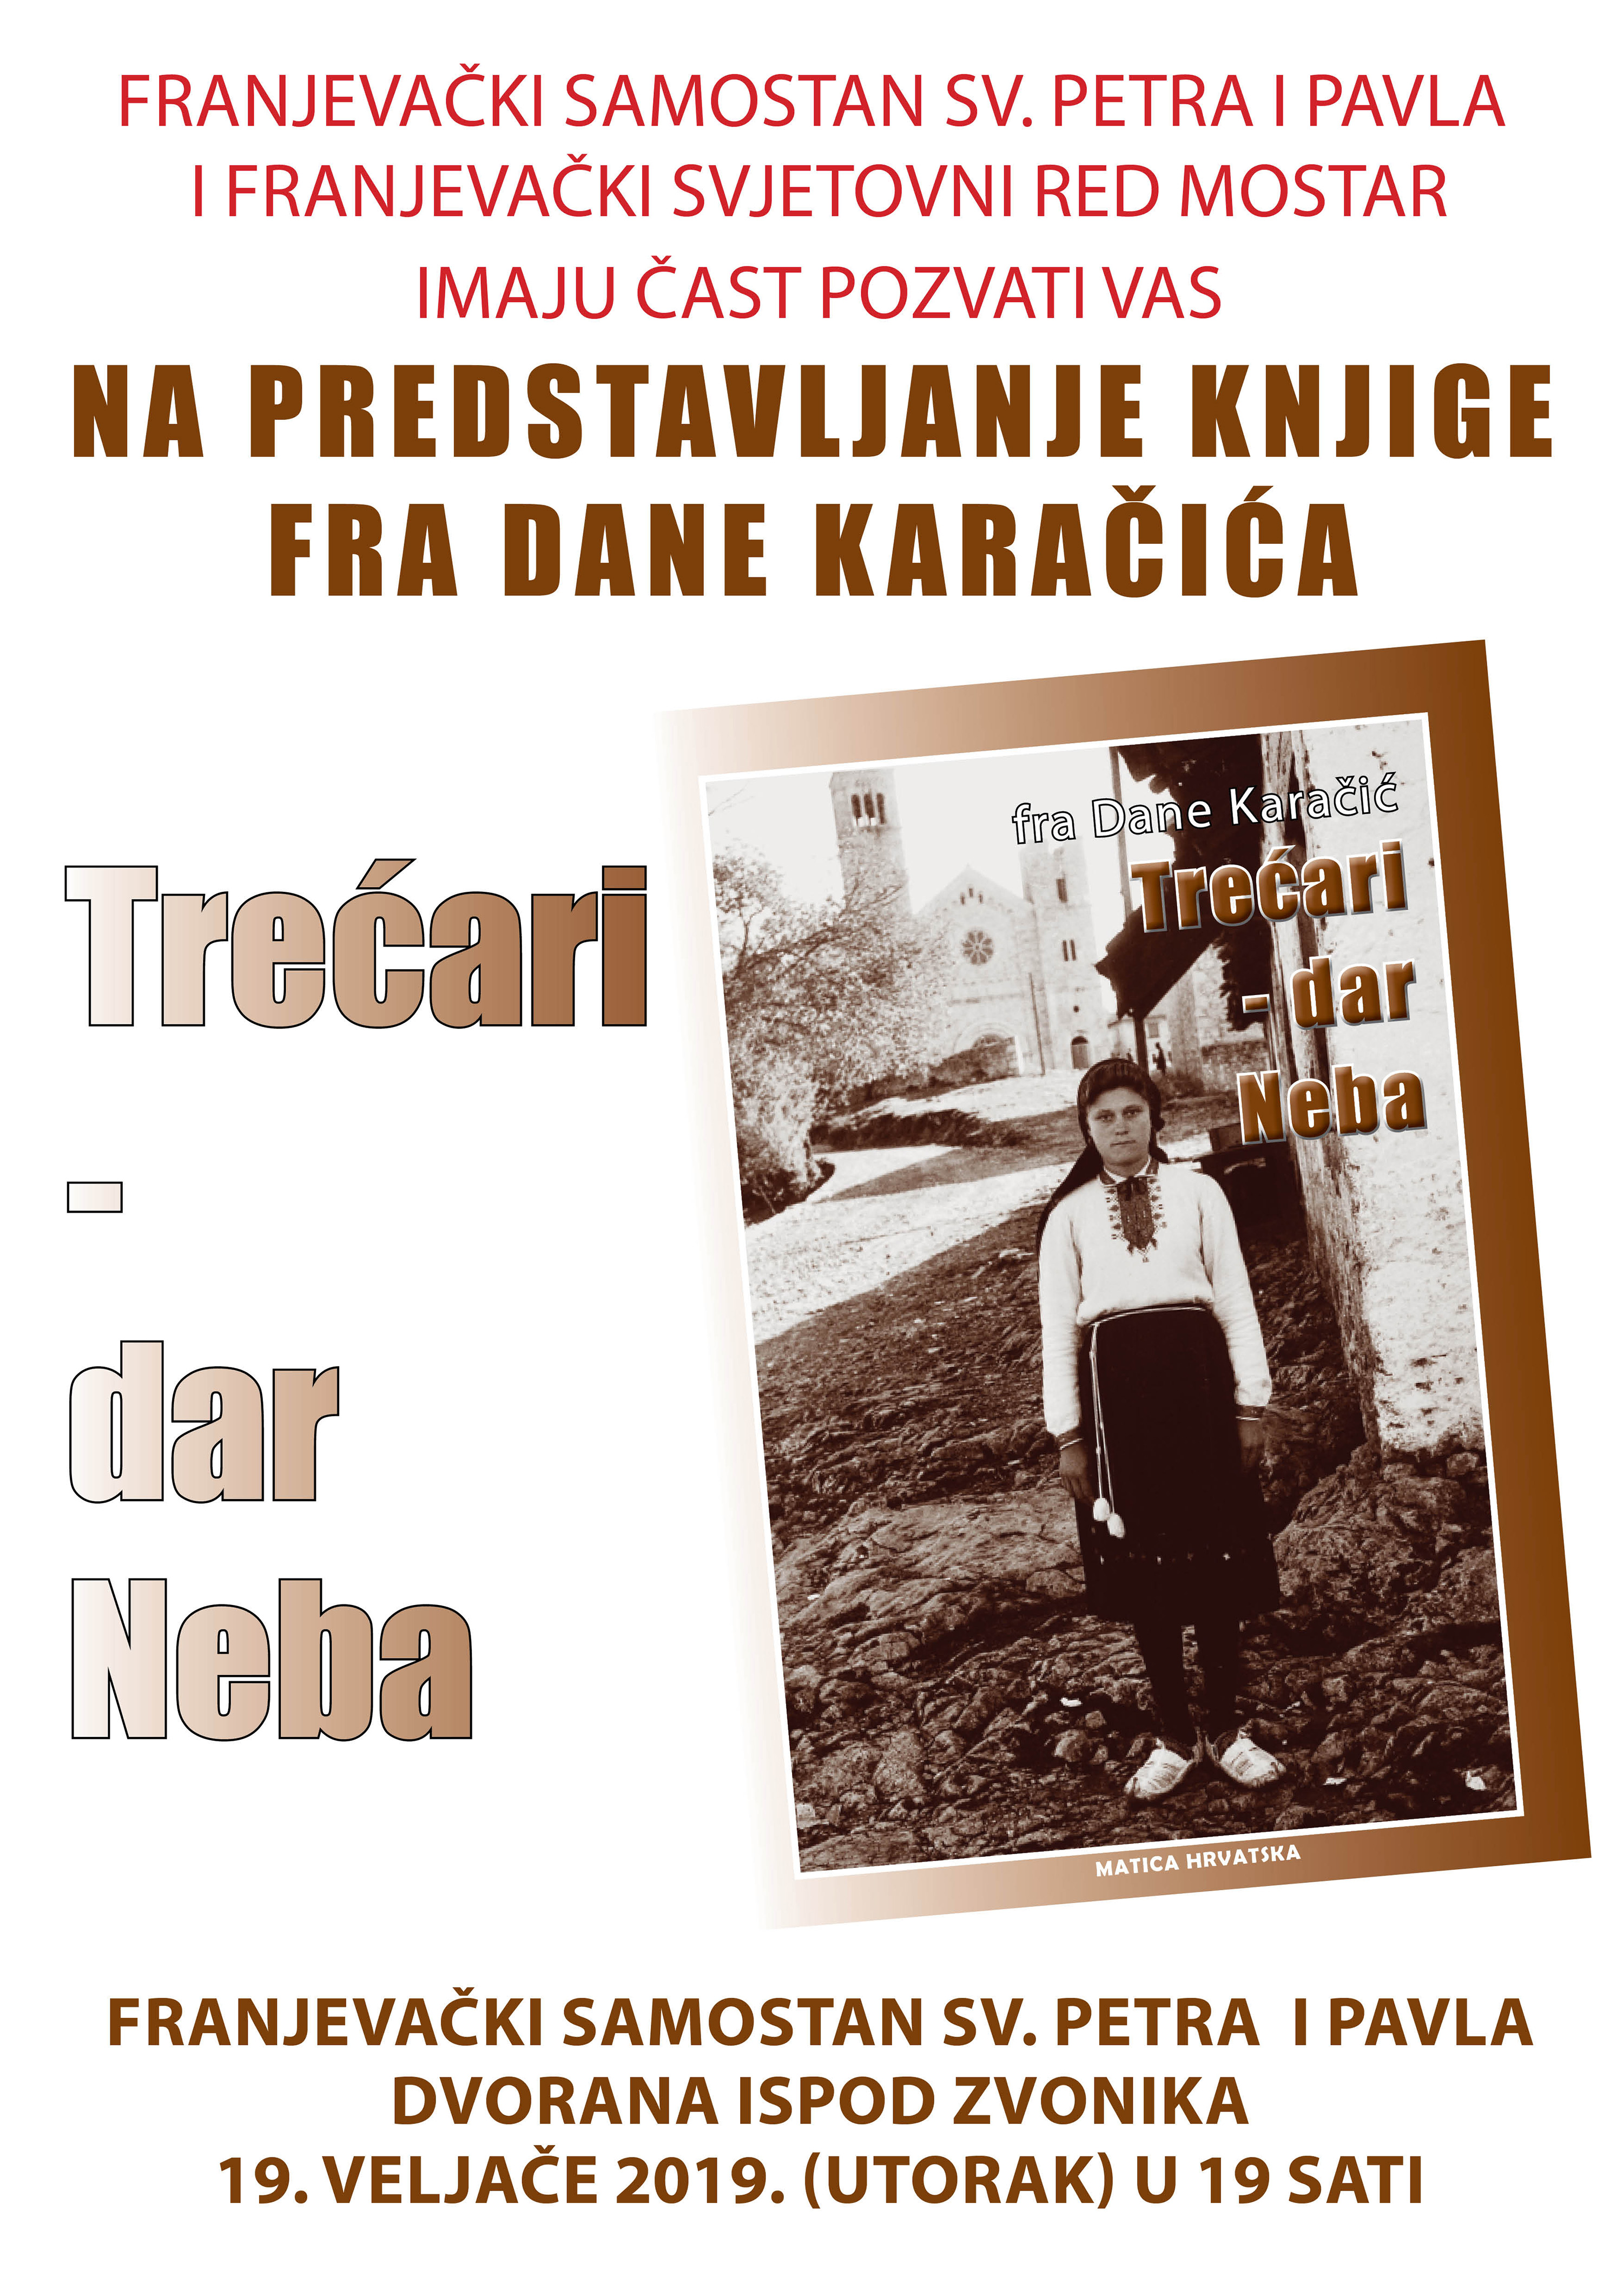 Predstavljanje knjige fra Dane Karačića "Trećari-dar Neba"